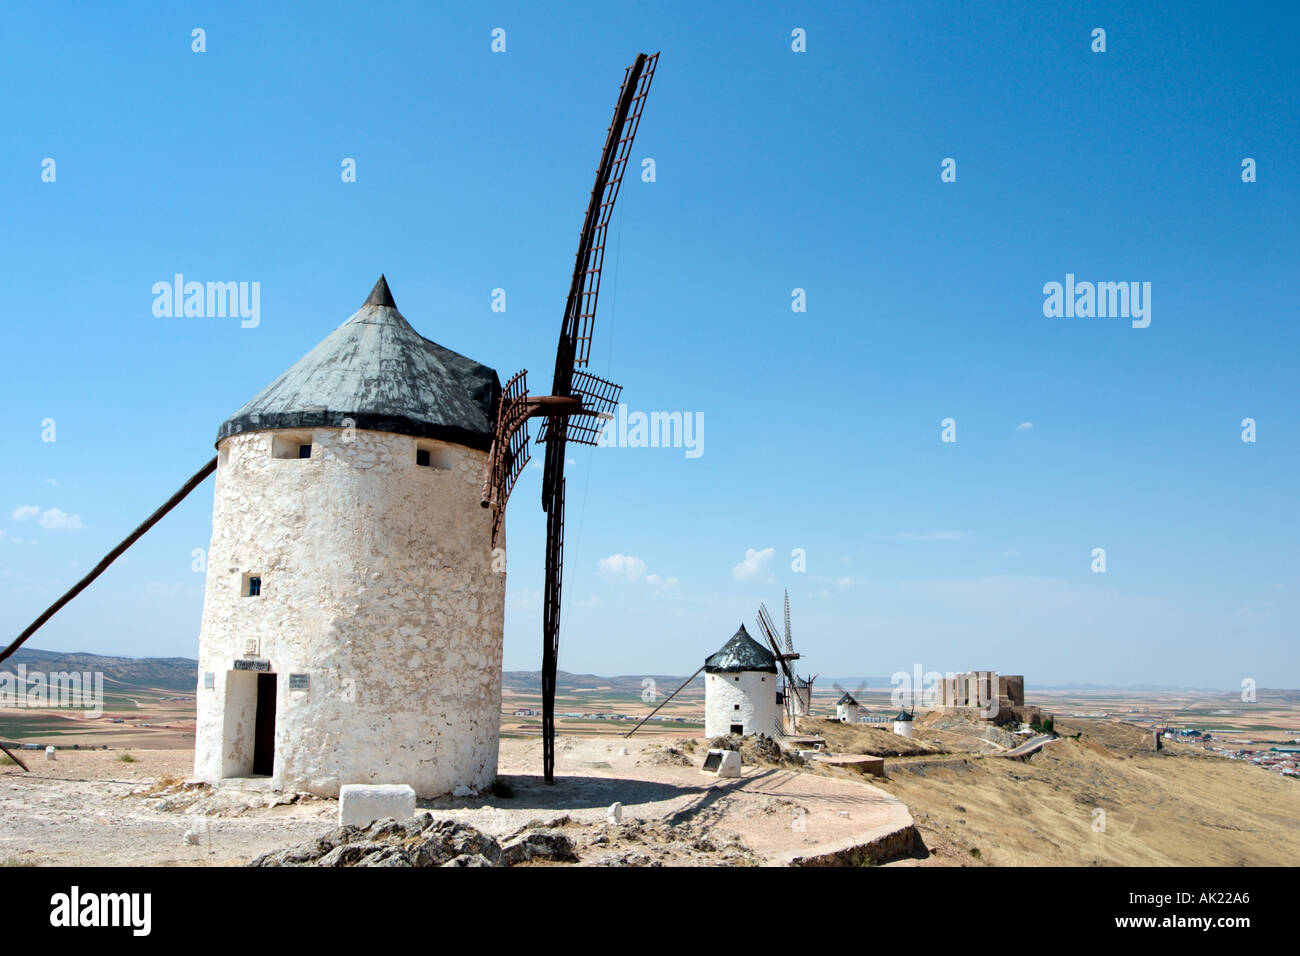 Don Quixote windmills. Famous windmills in Consuegra, Castilla-La-Mancha, Spain - setting for the novel El ingenioso Hidalgo don Quixote de la Mancha Stock Photo